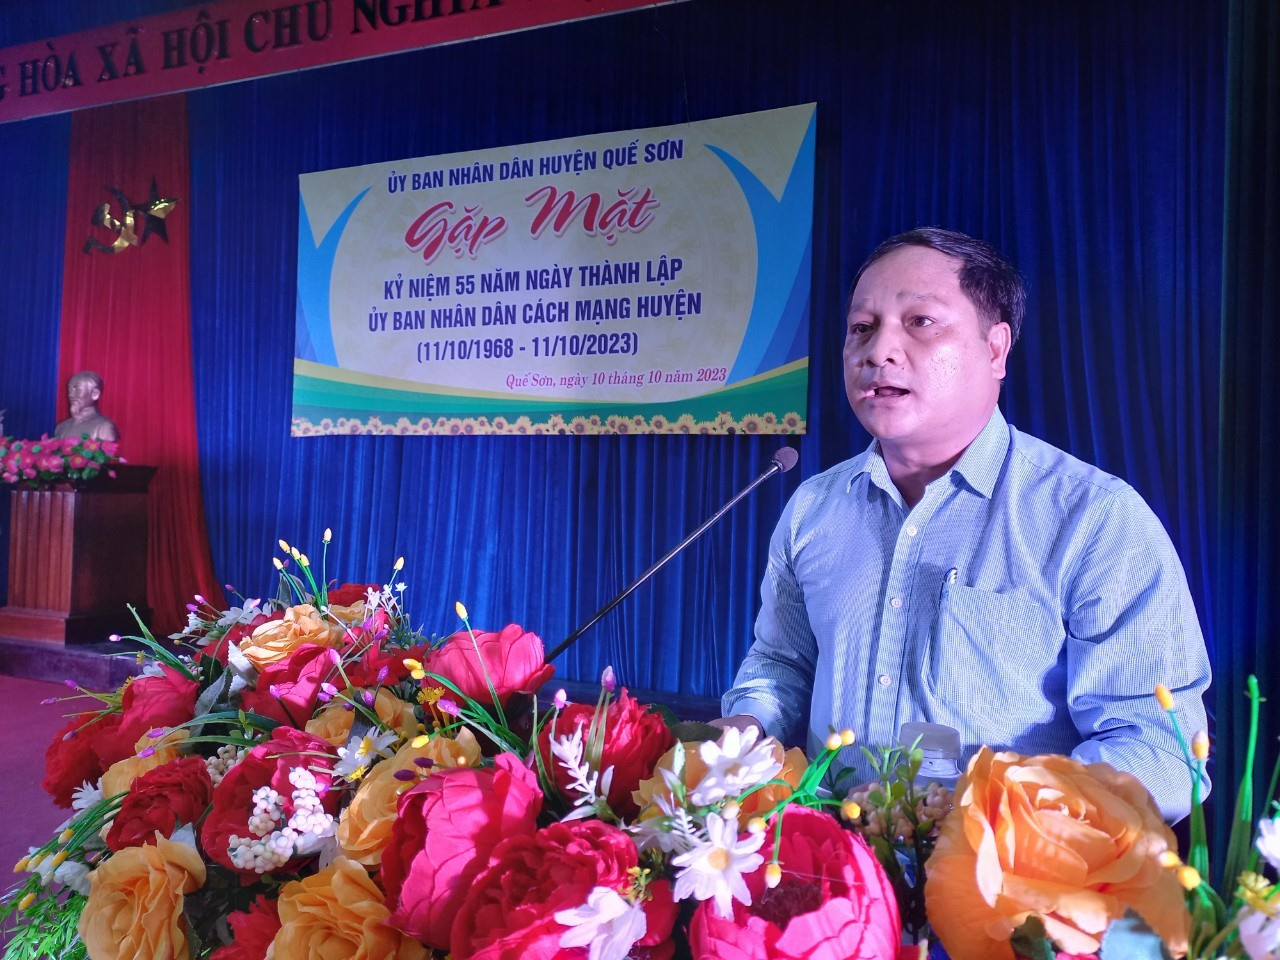 Ông Nguyễn Phước Sơn – Chủ tịch UBND huyện Quế Sơn thông tin tình hình kinh tế - xã hội của địa phương. Ảnh: DUY THÁI